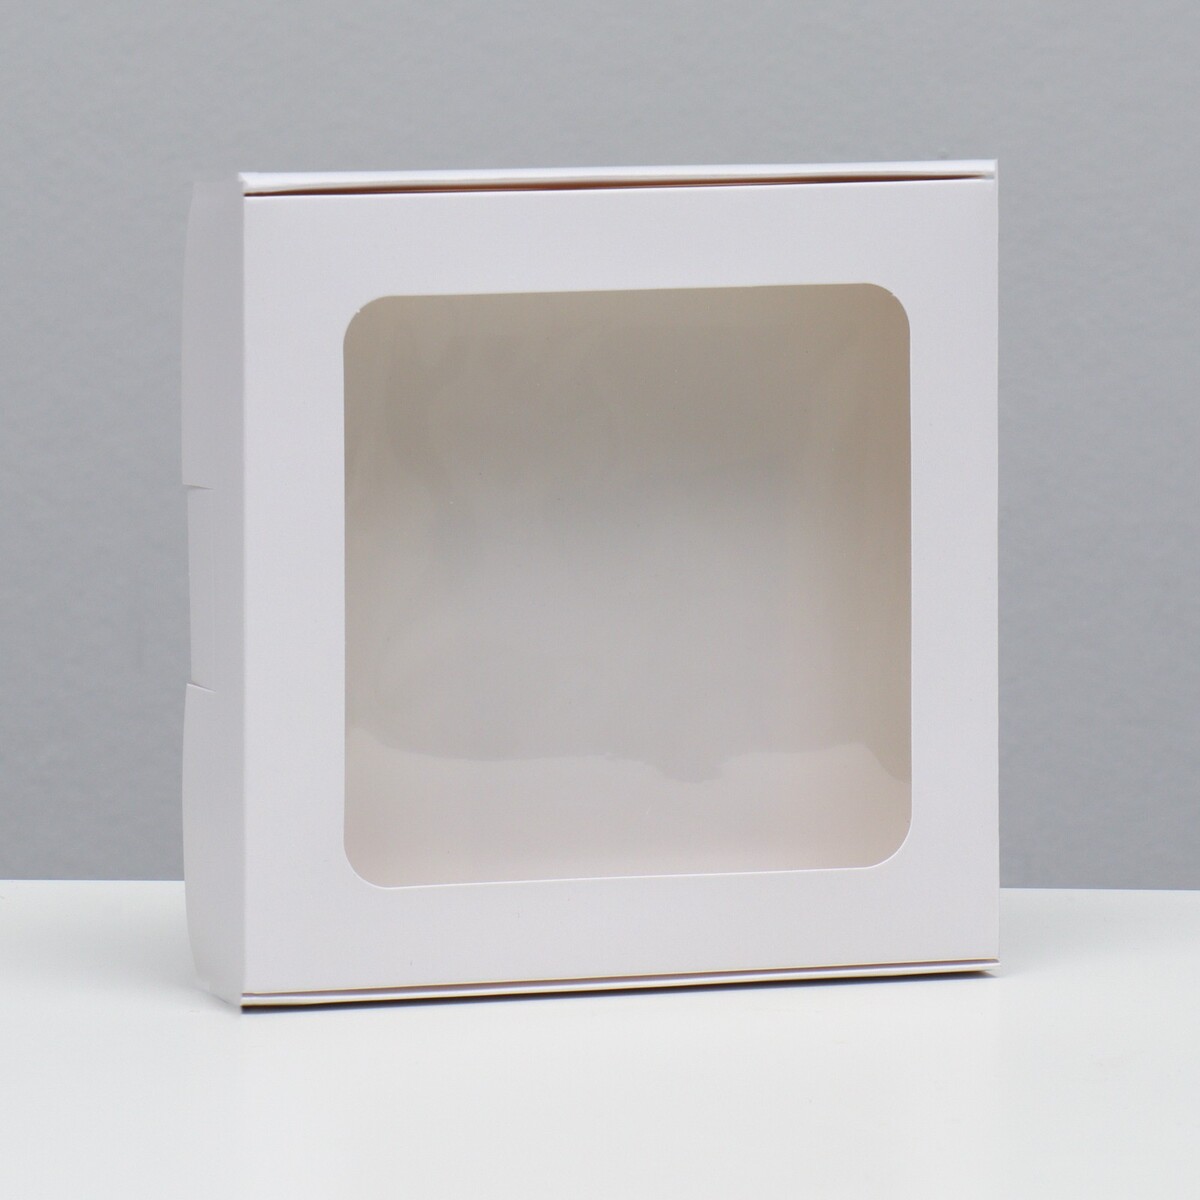 Коробка самосборная, белая, 16 х 16 х 3 см коробка самосборная белая 21 х 21 х 3 см